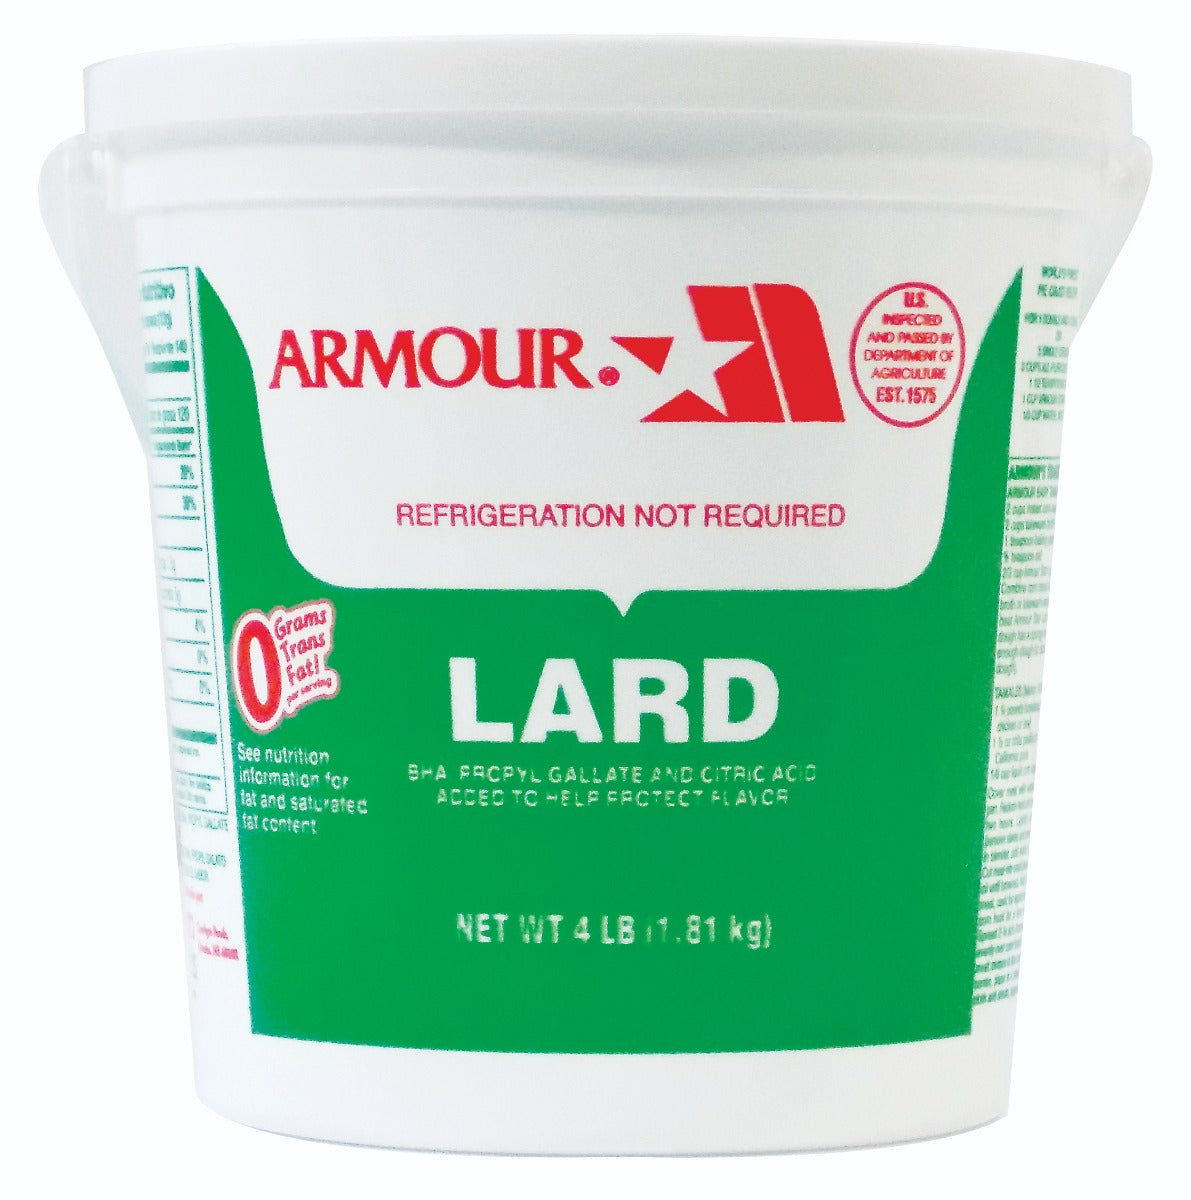 ARMOUR: Lard in Pail, 4 lb - Vending Business Solutions